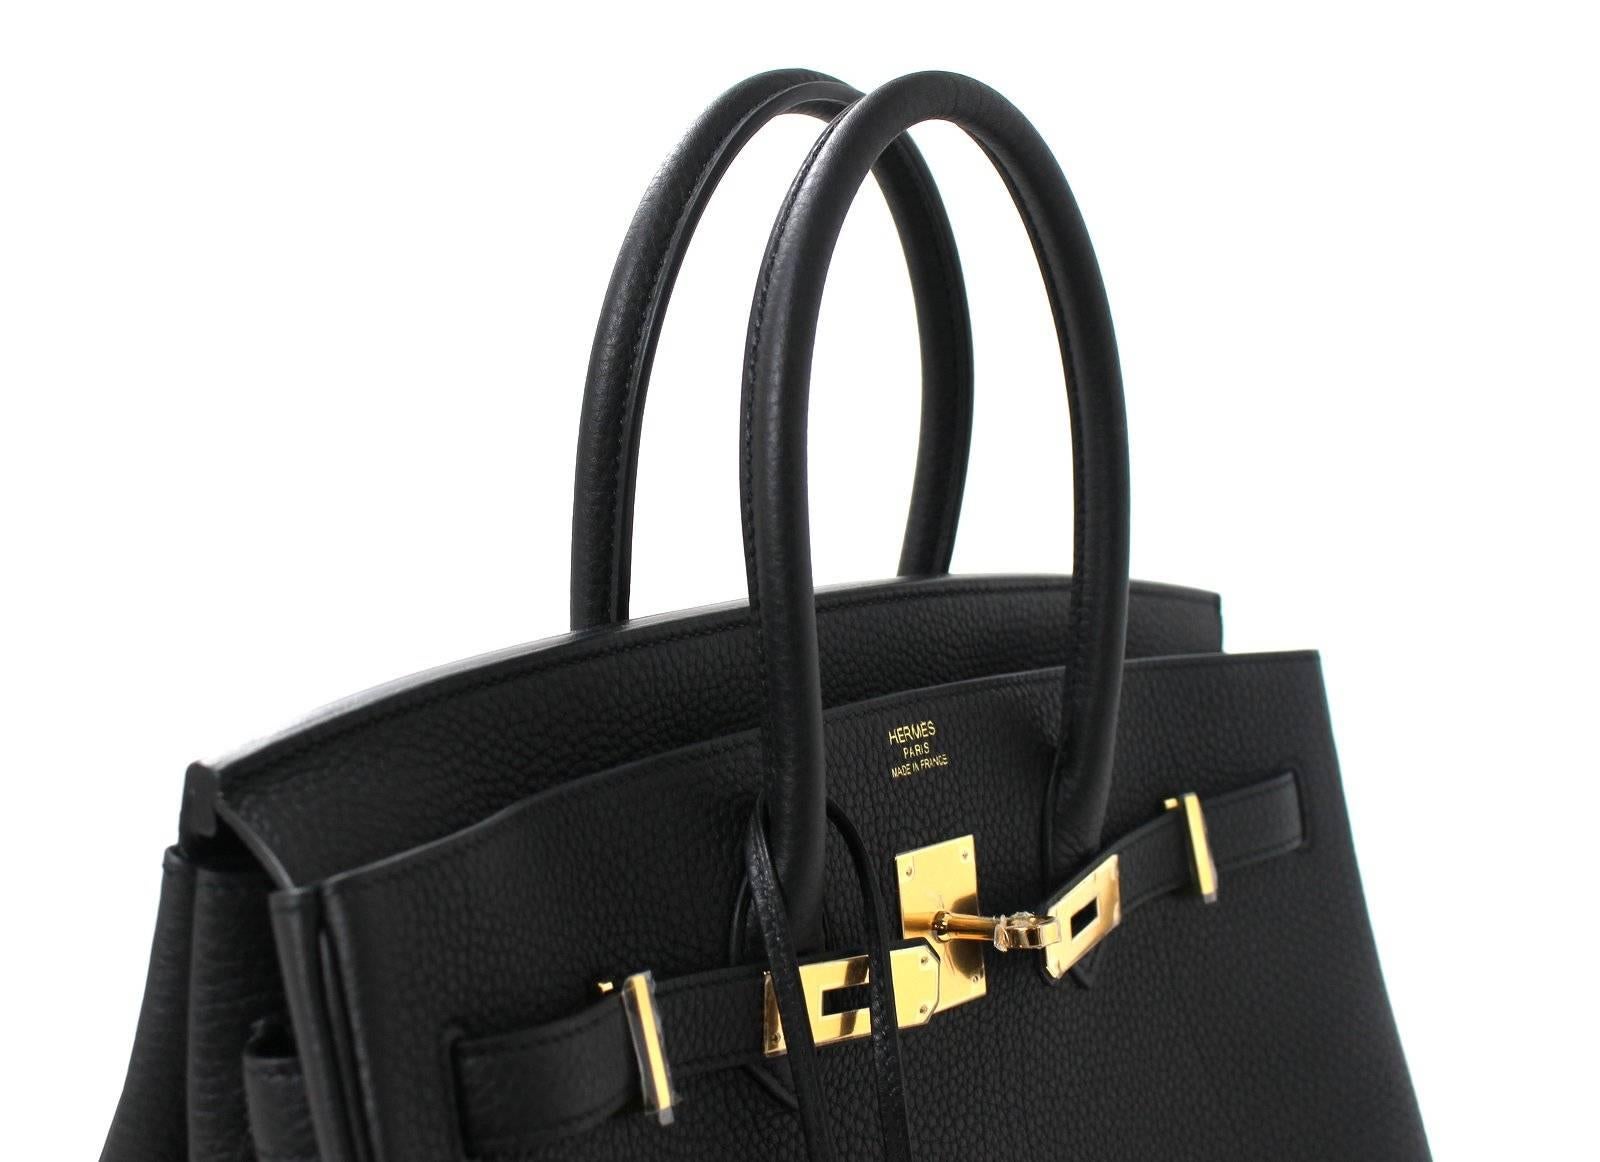 Hermes Black Birkin Bag- 35 cm, Togo Leather with Gold Hardware 2